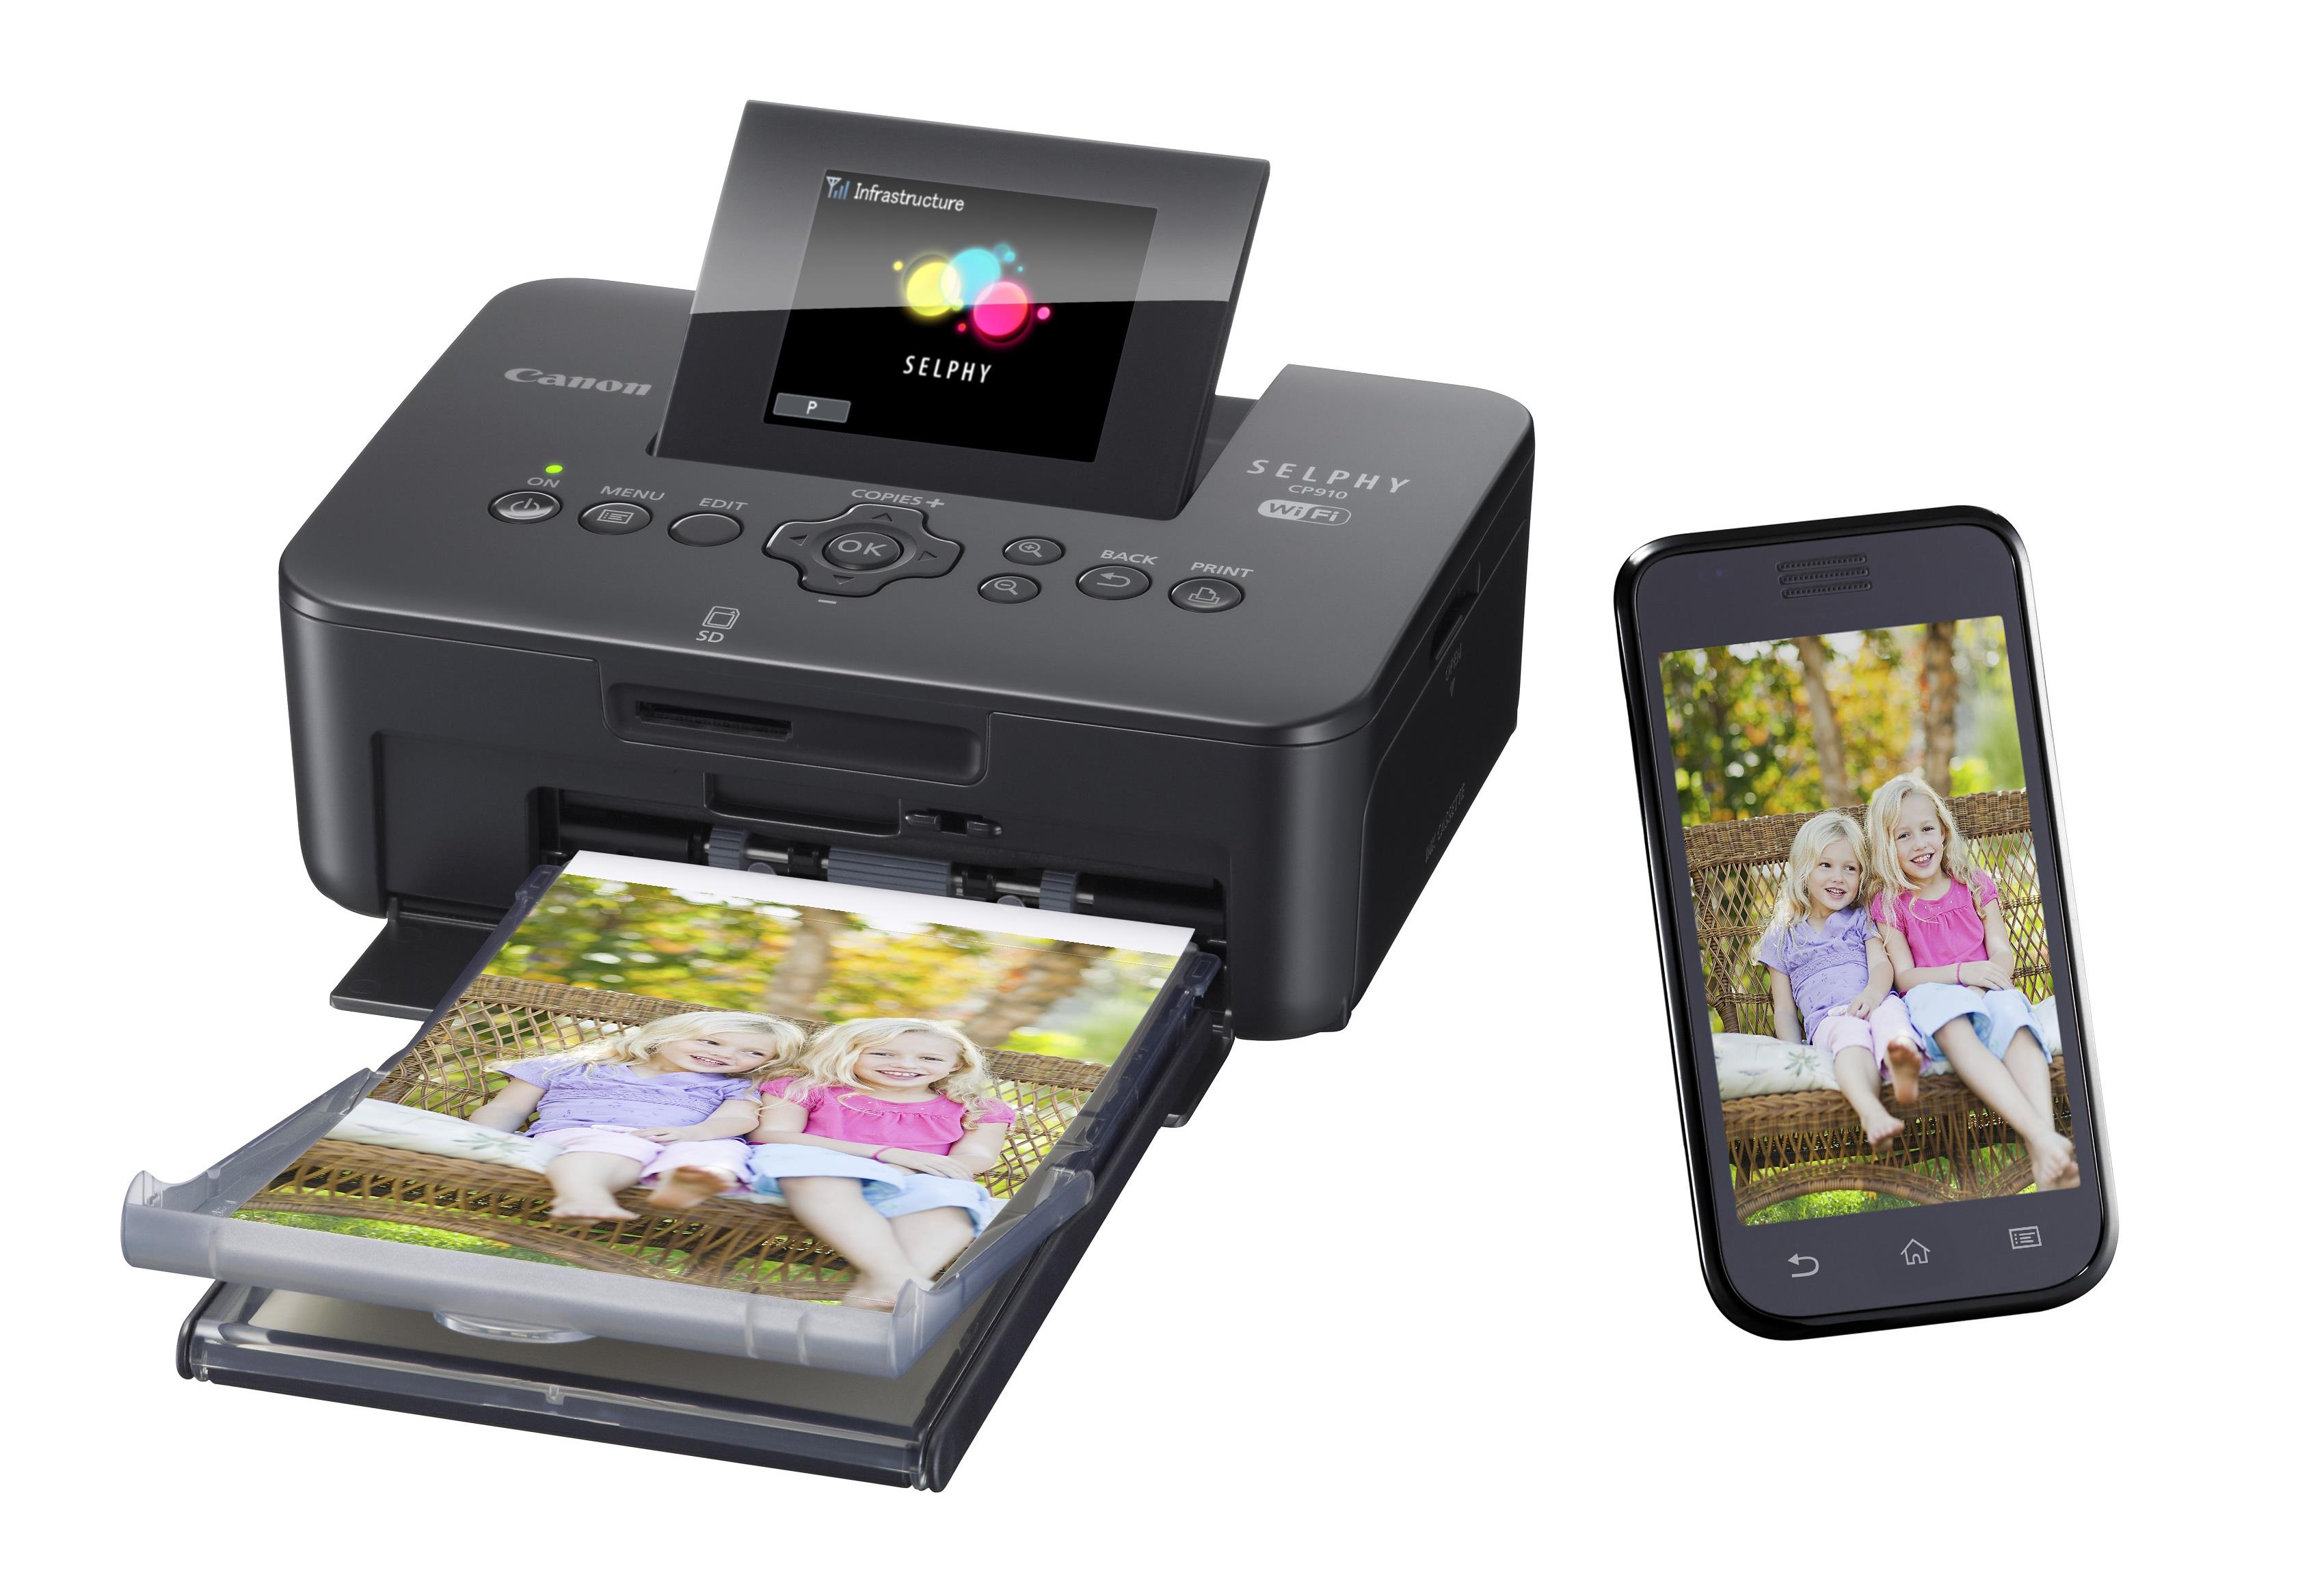 печать фото с айфона через принтер